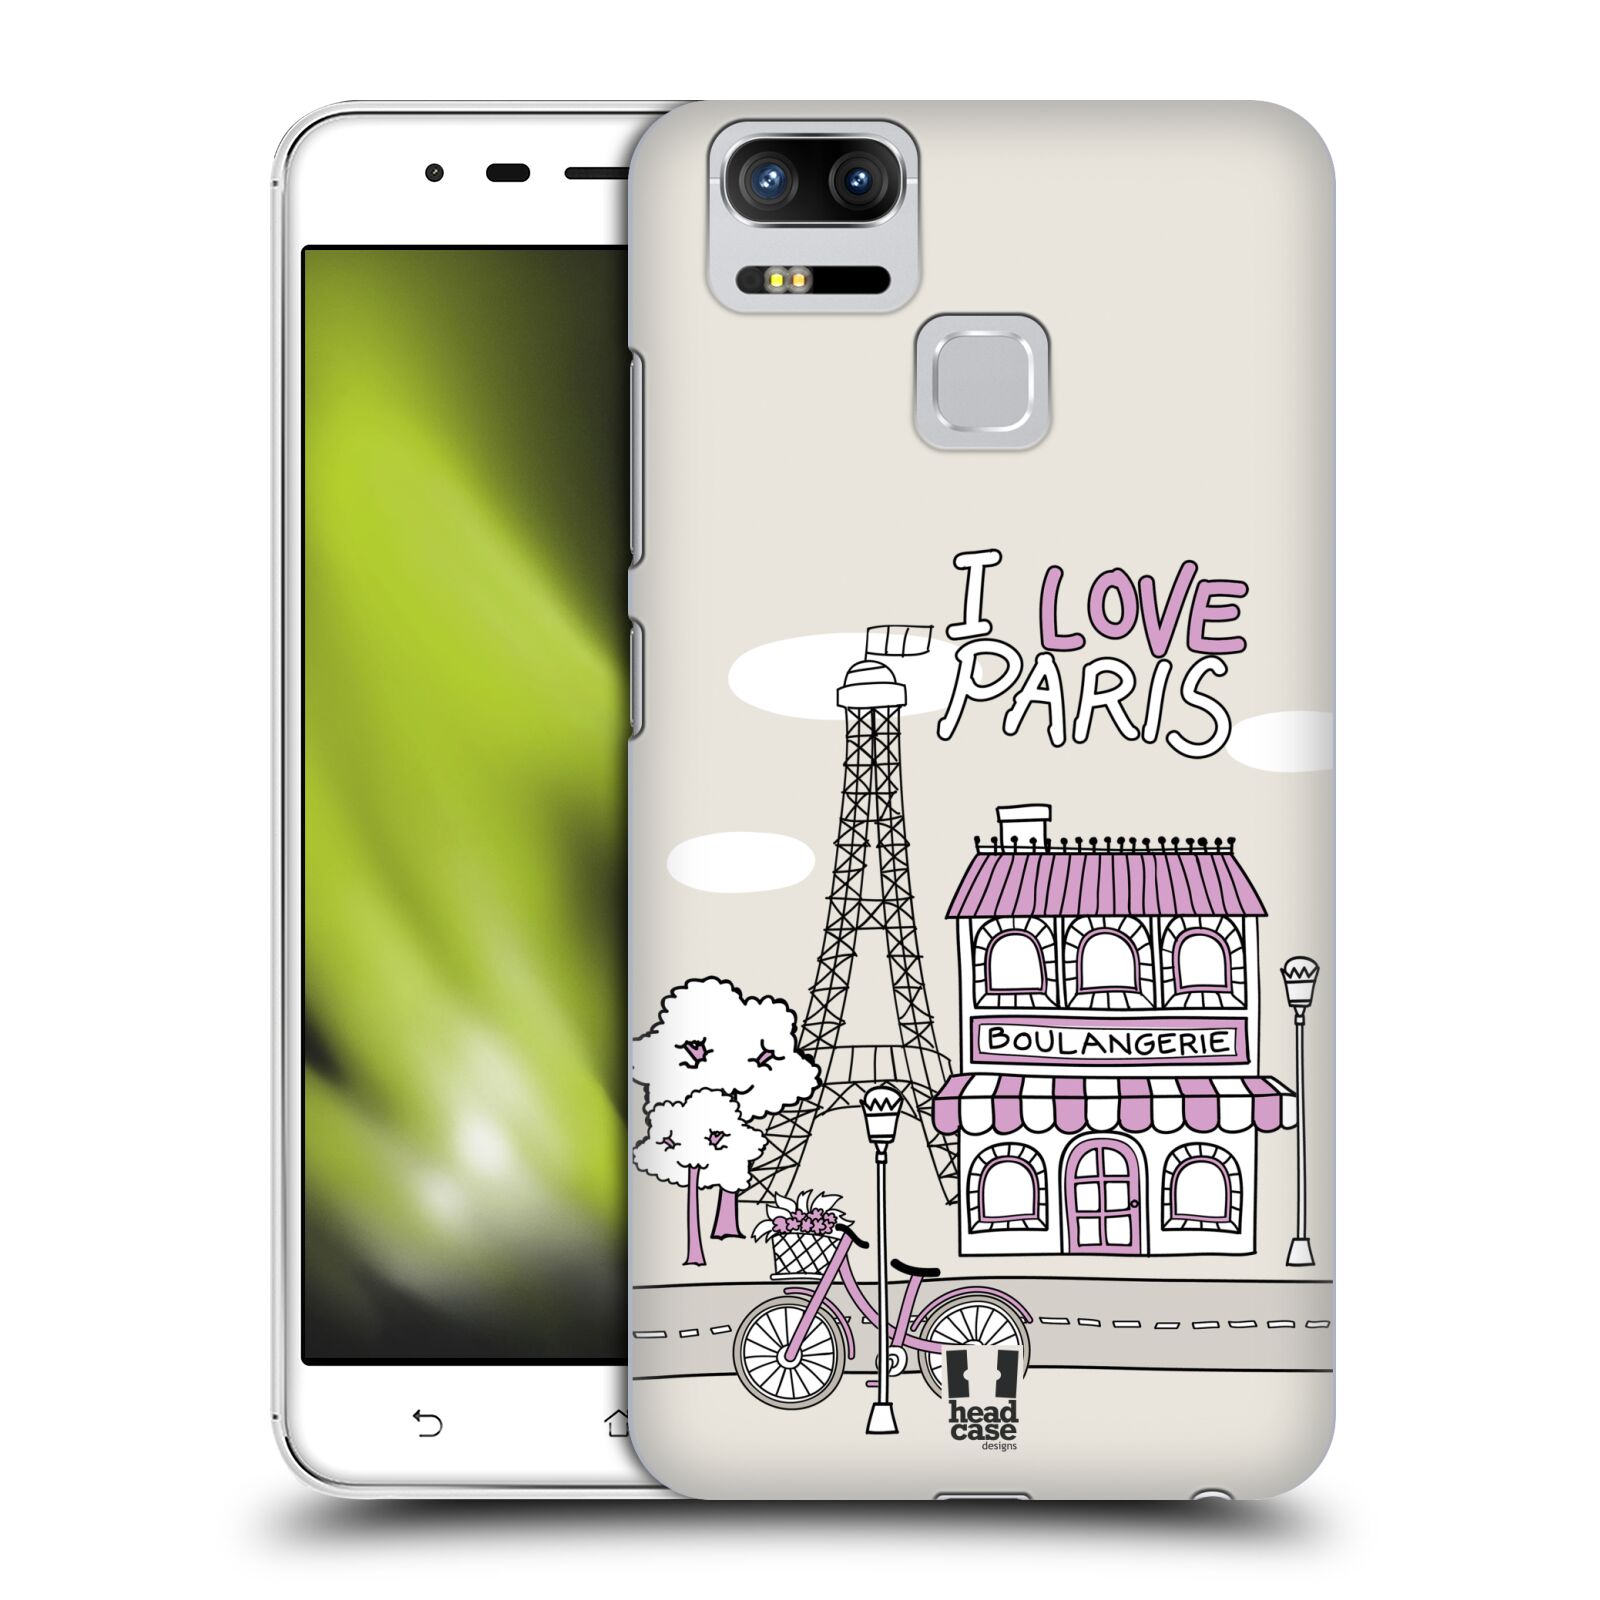 HEAD CASE plastový obal na mobil Asus Zenfone 3 Zoom ZE553KL vzor Kreslená městečka FIALOVÁ, Paříž, Francie, I LOVE PARIS